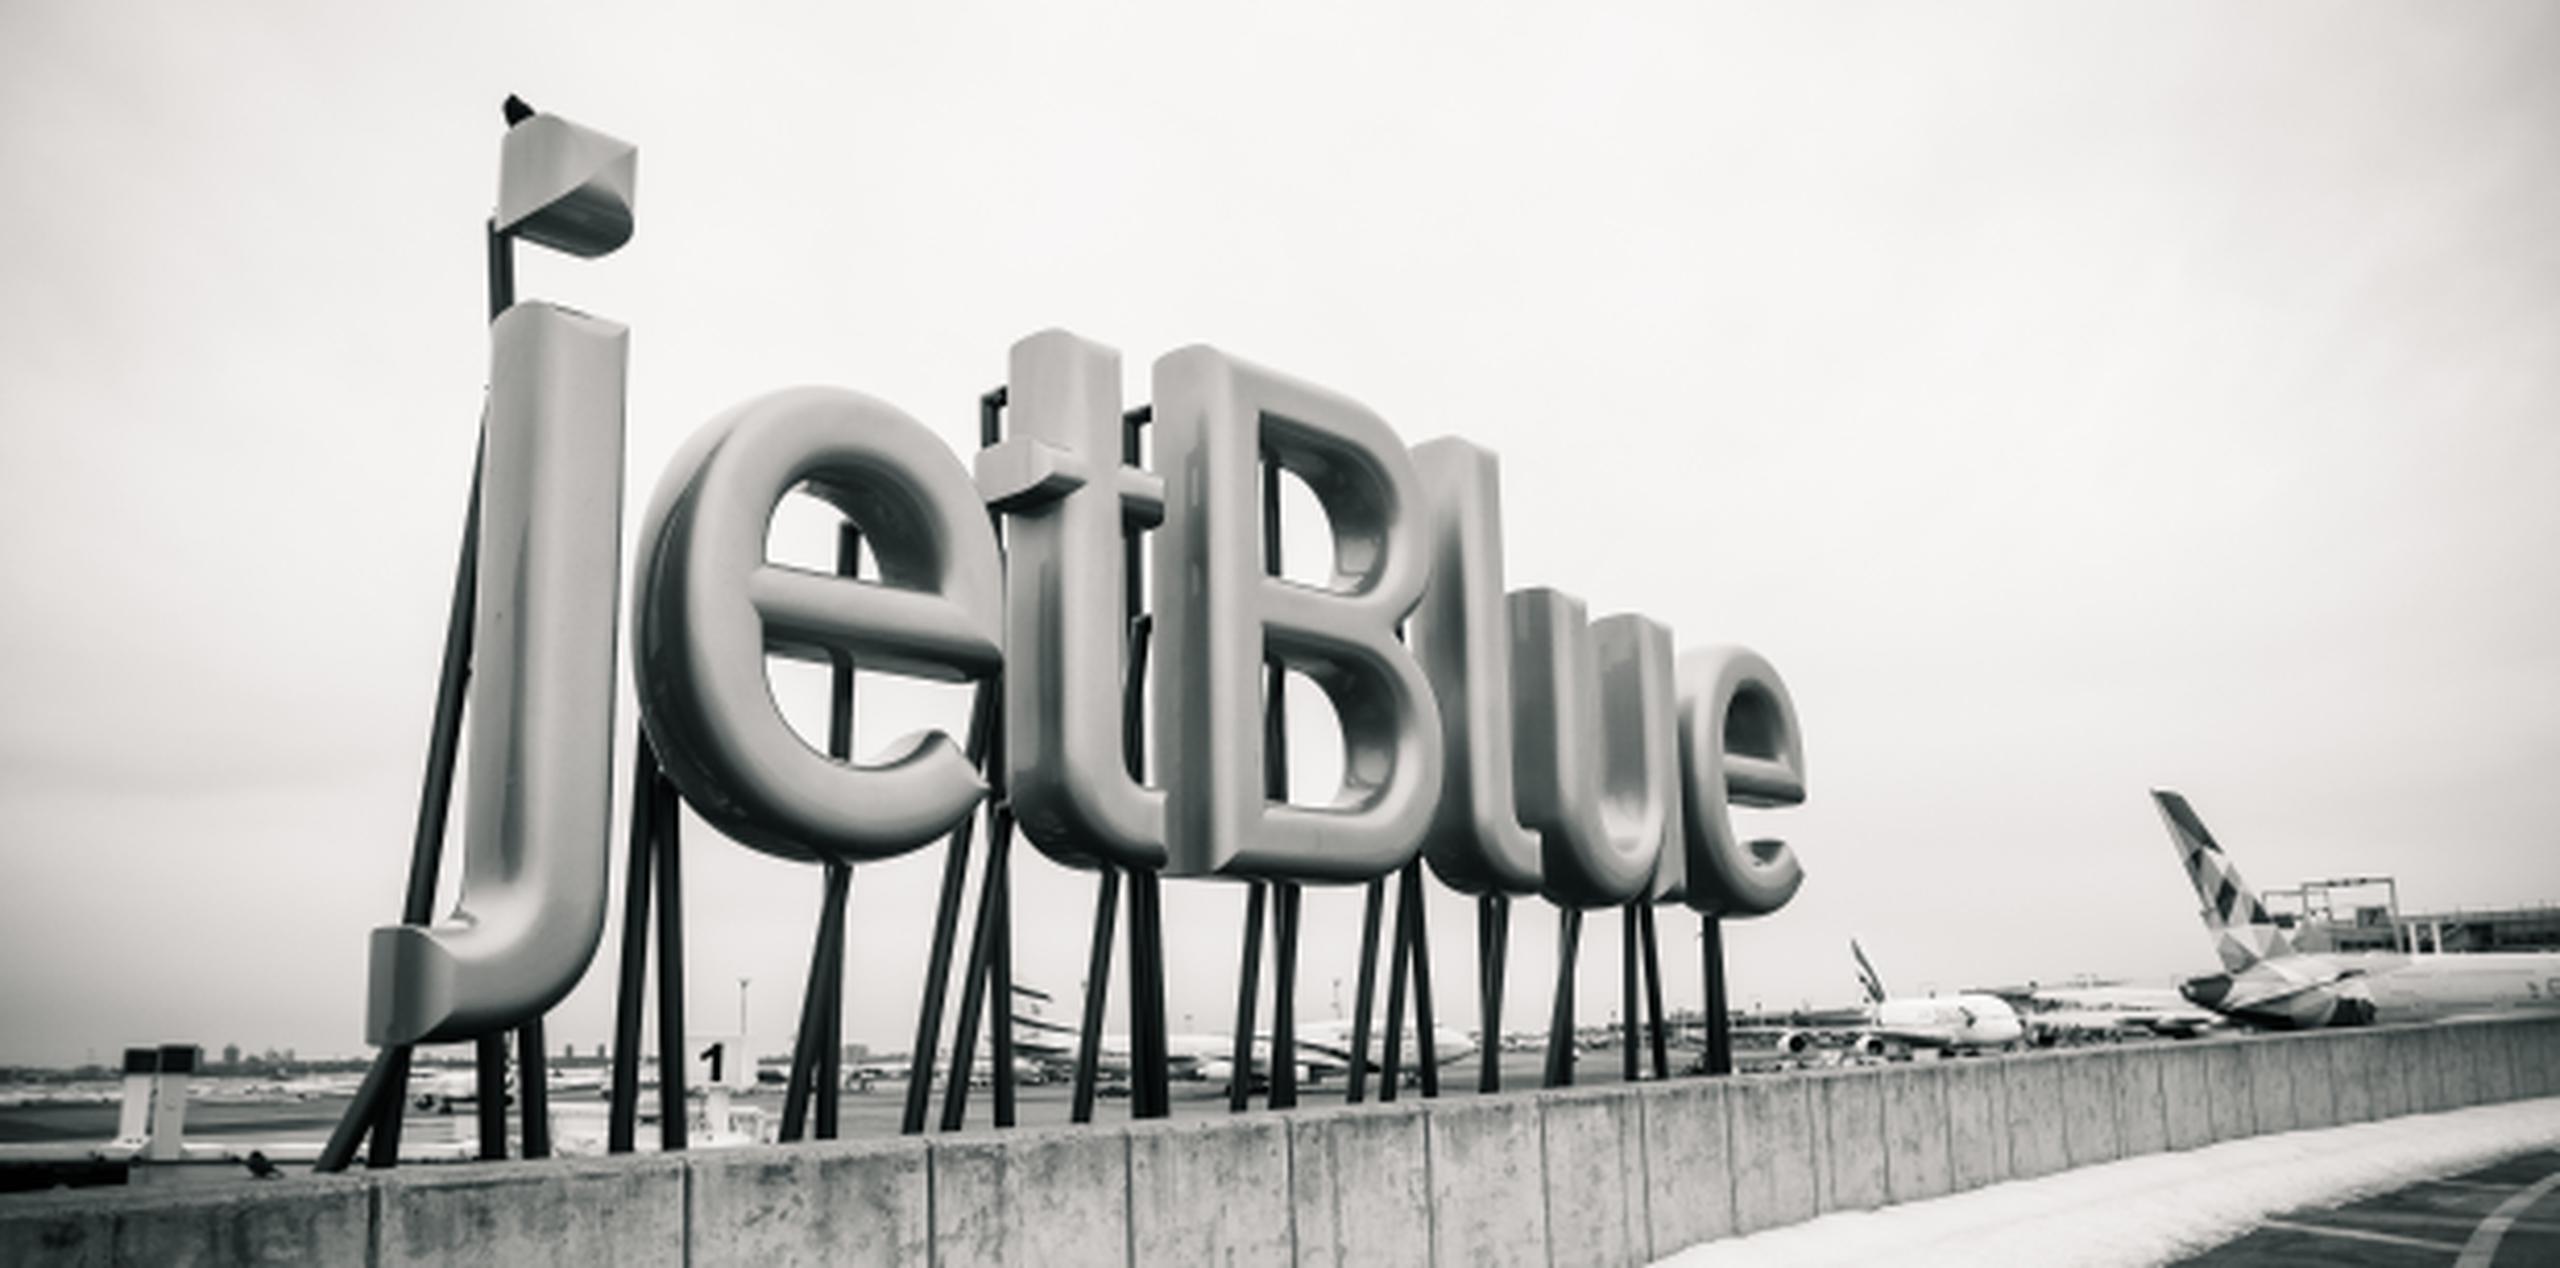 Jetblue es la sexta aerolínea más importante en Estados Unidos. (Shutterstock)